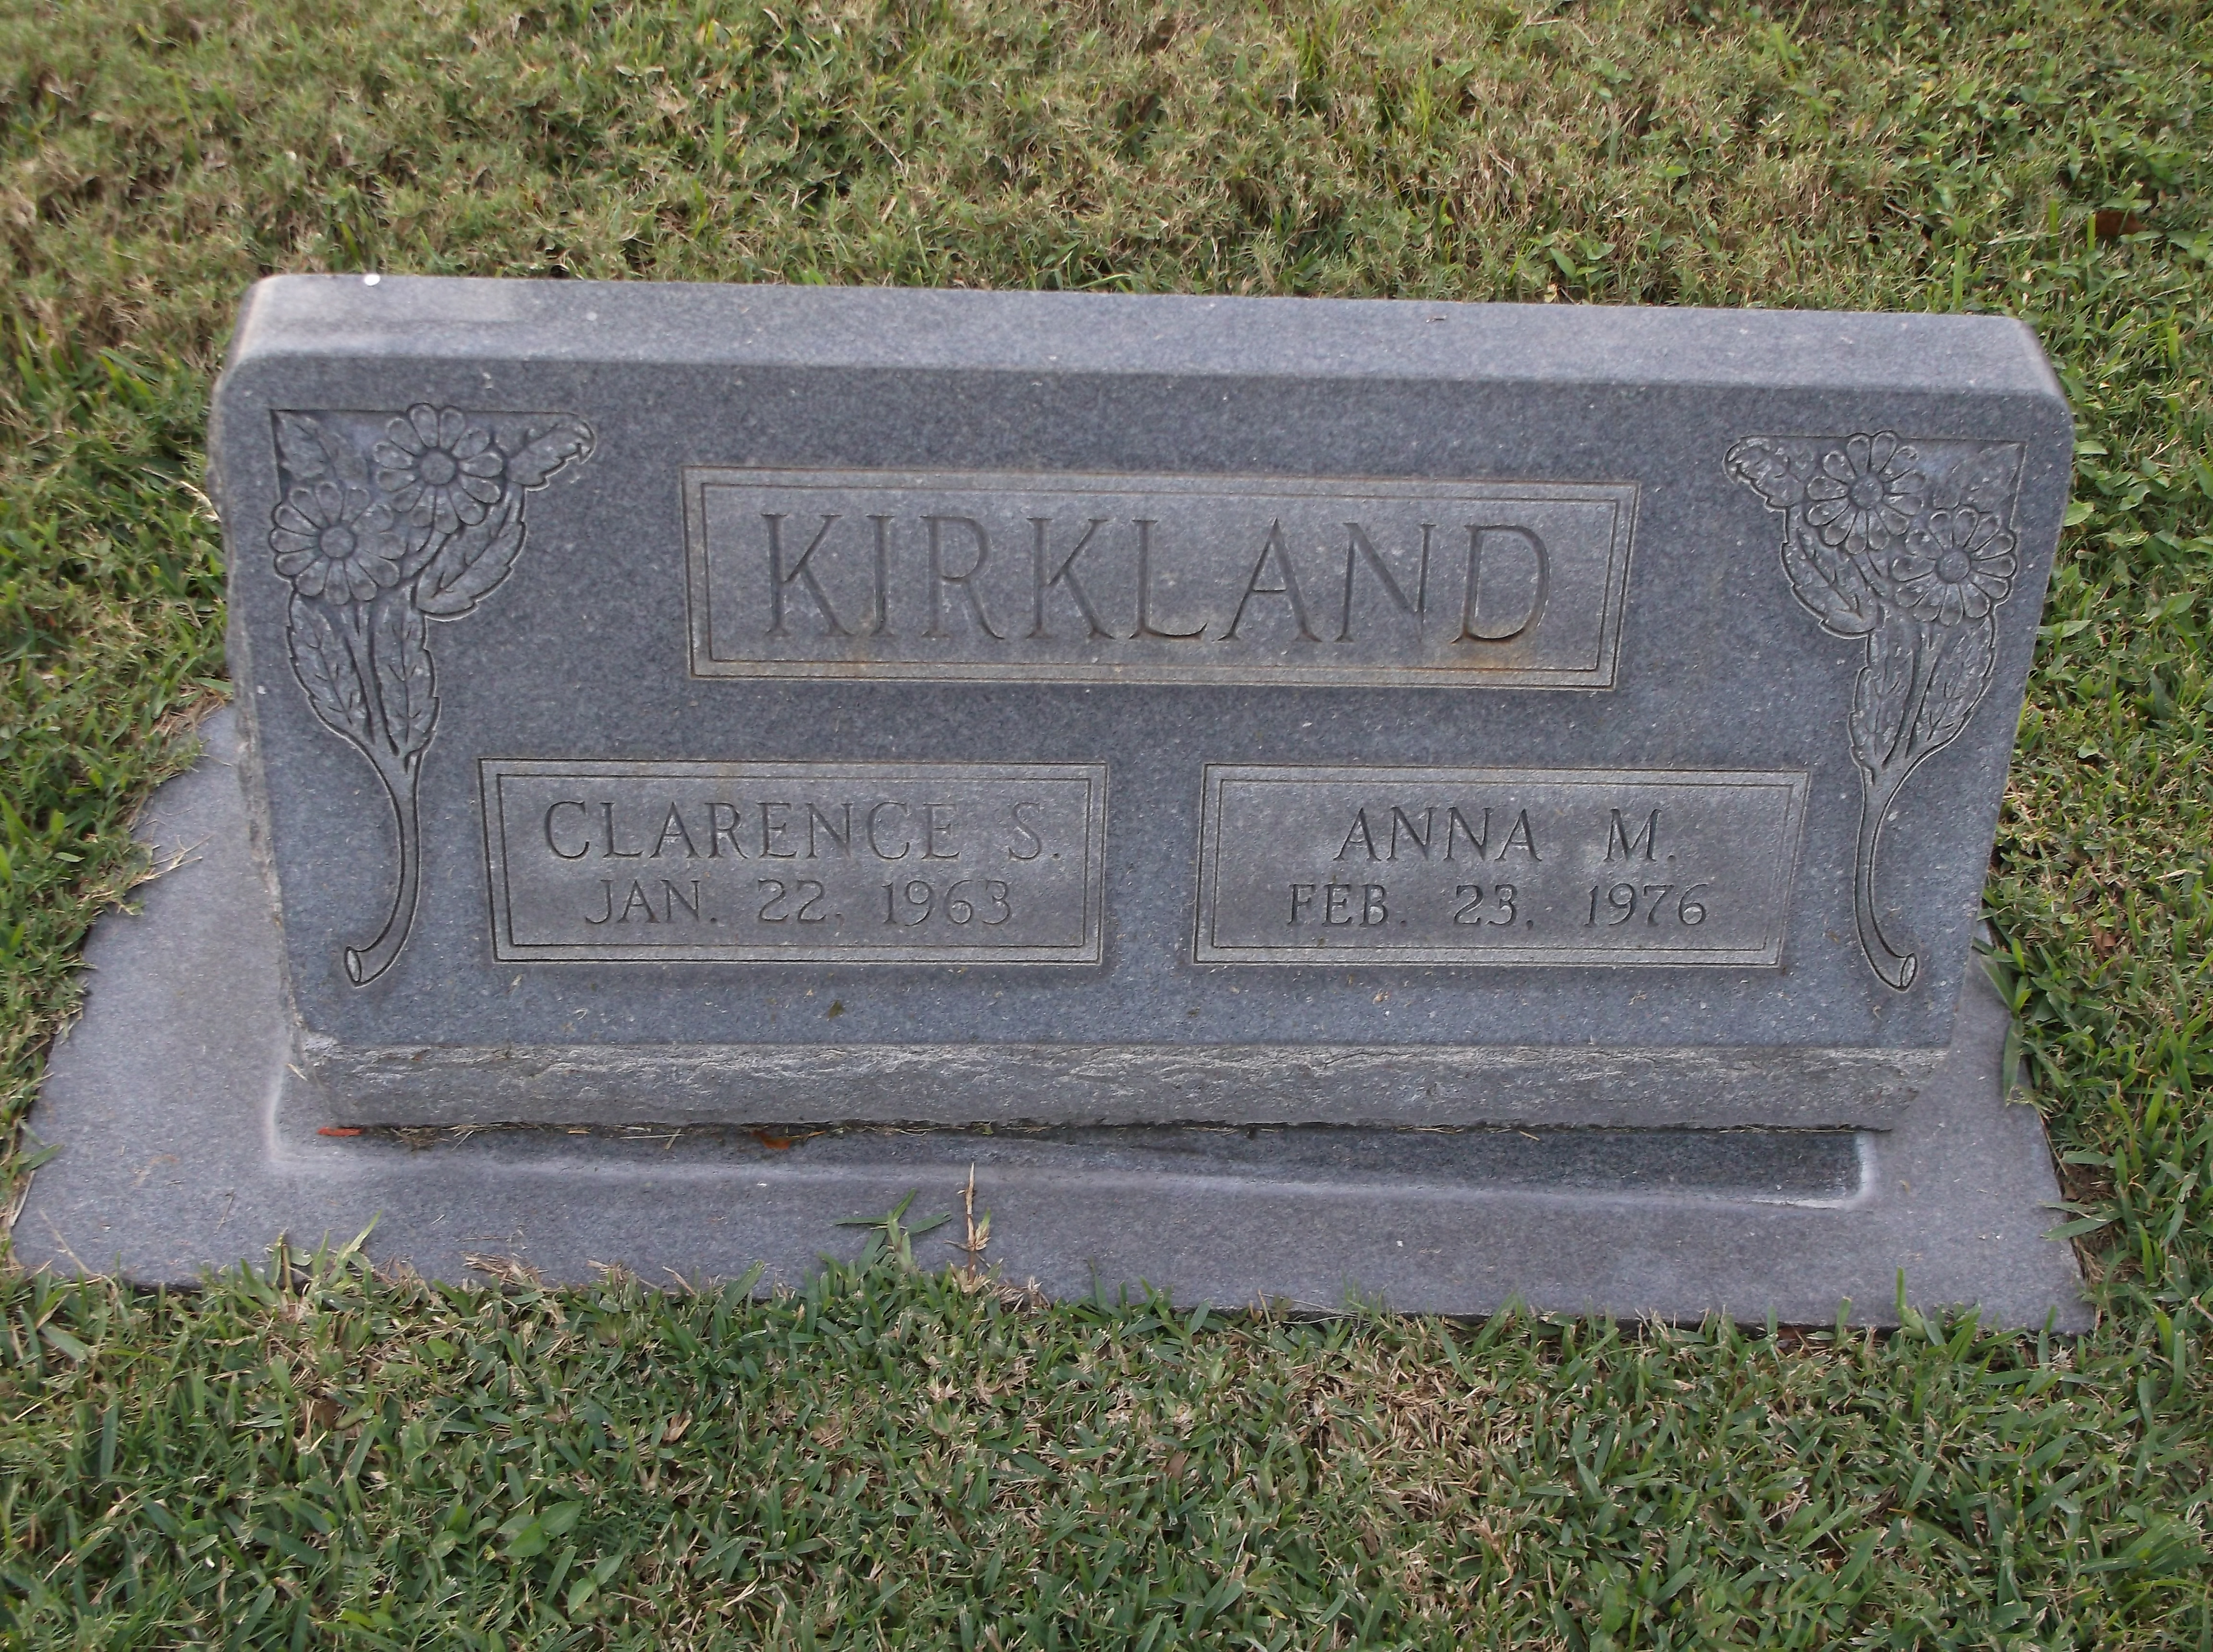 Clarence S Kirkland